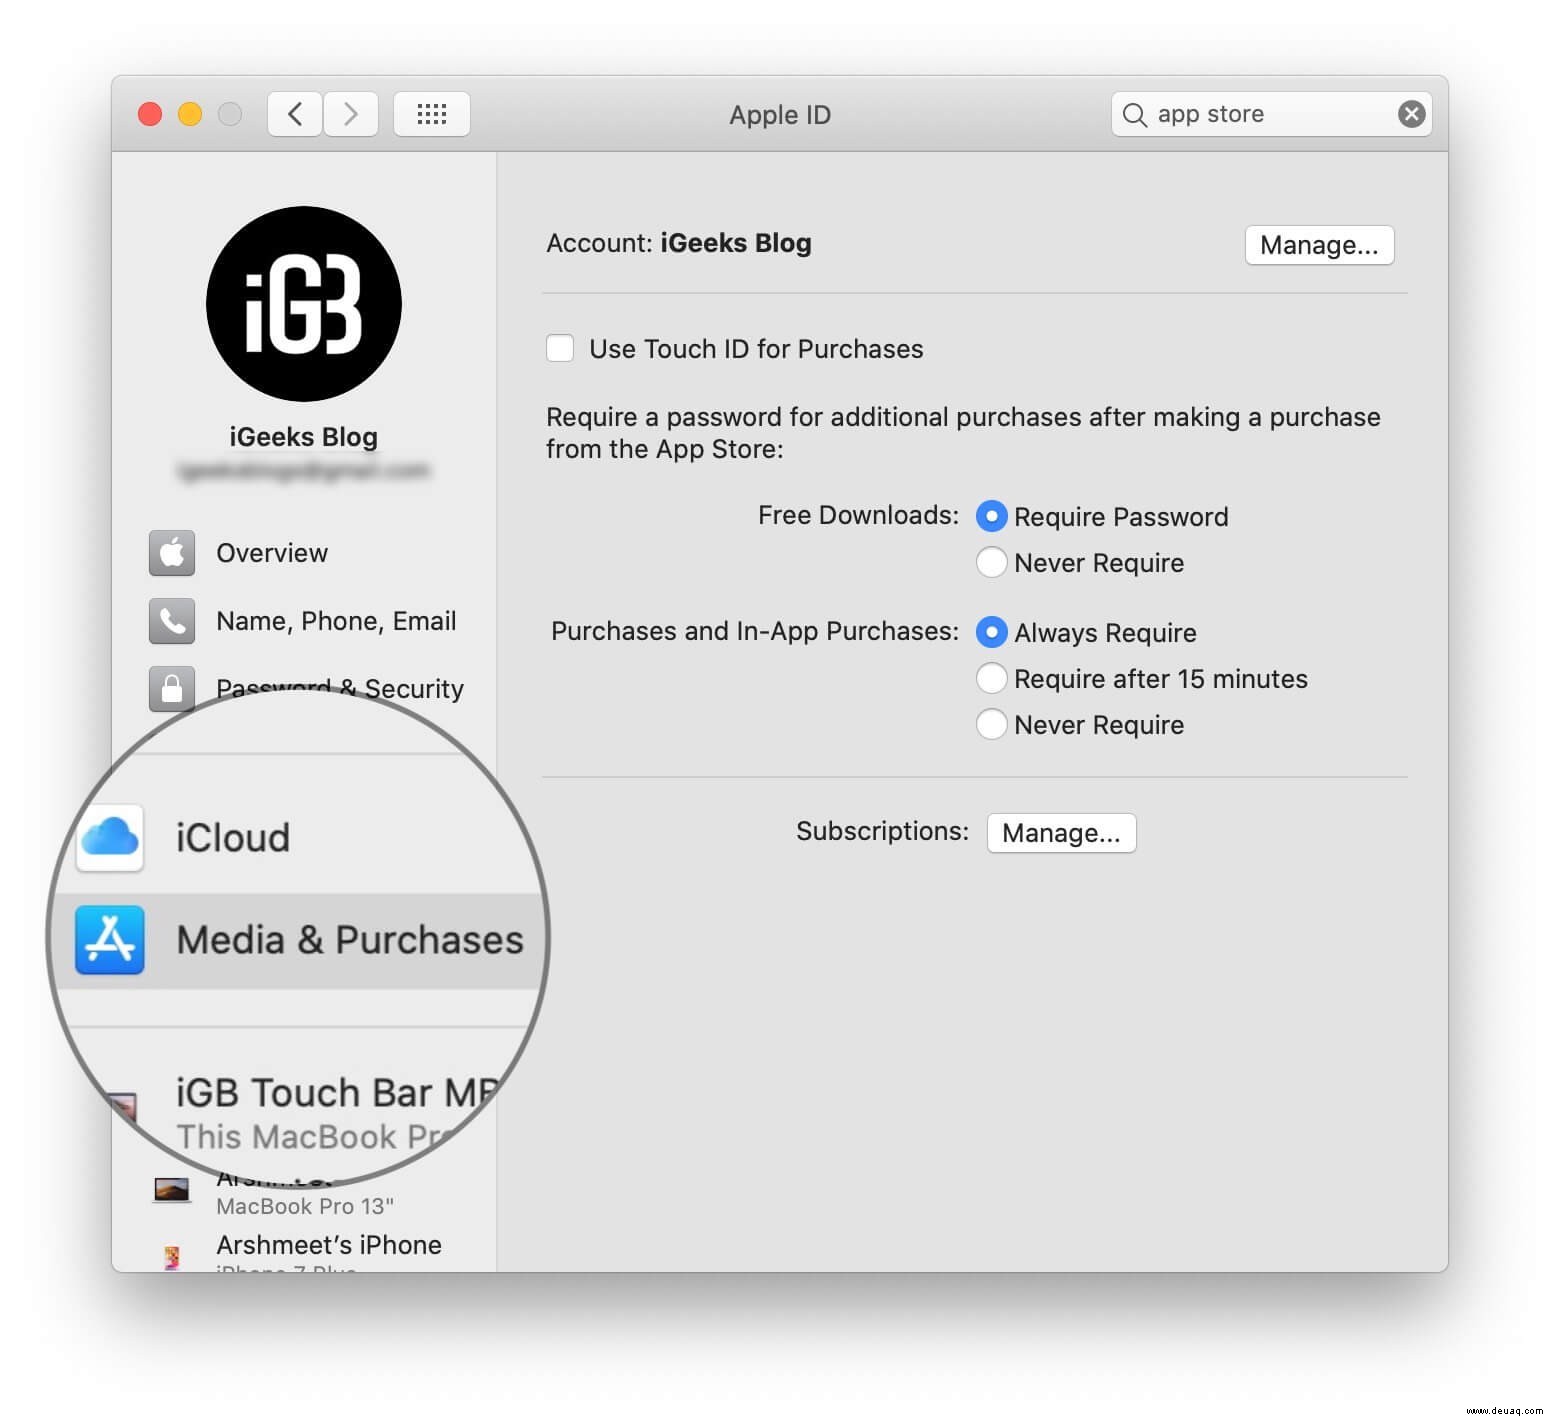 So laden Sie kostenlose Apps aus dem Mac App Store ohne Apple-ID-Passwort herunter 